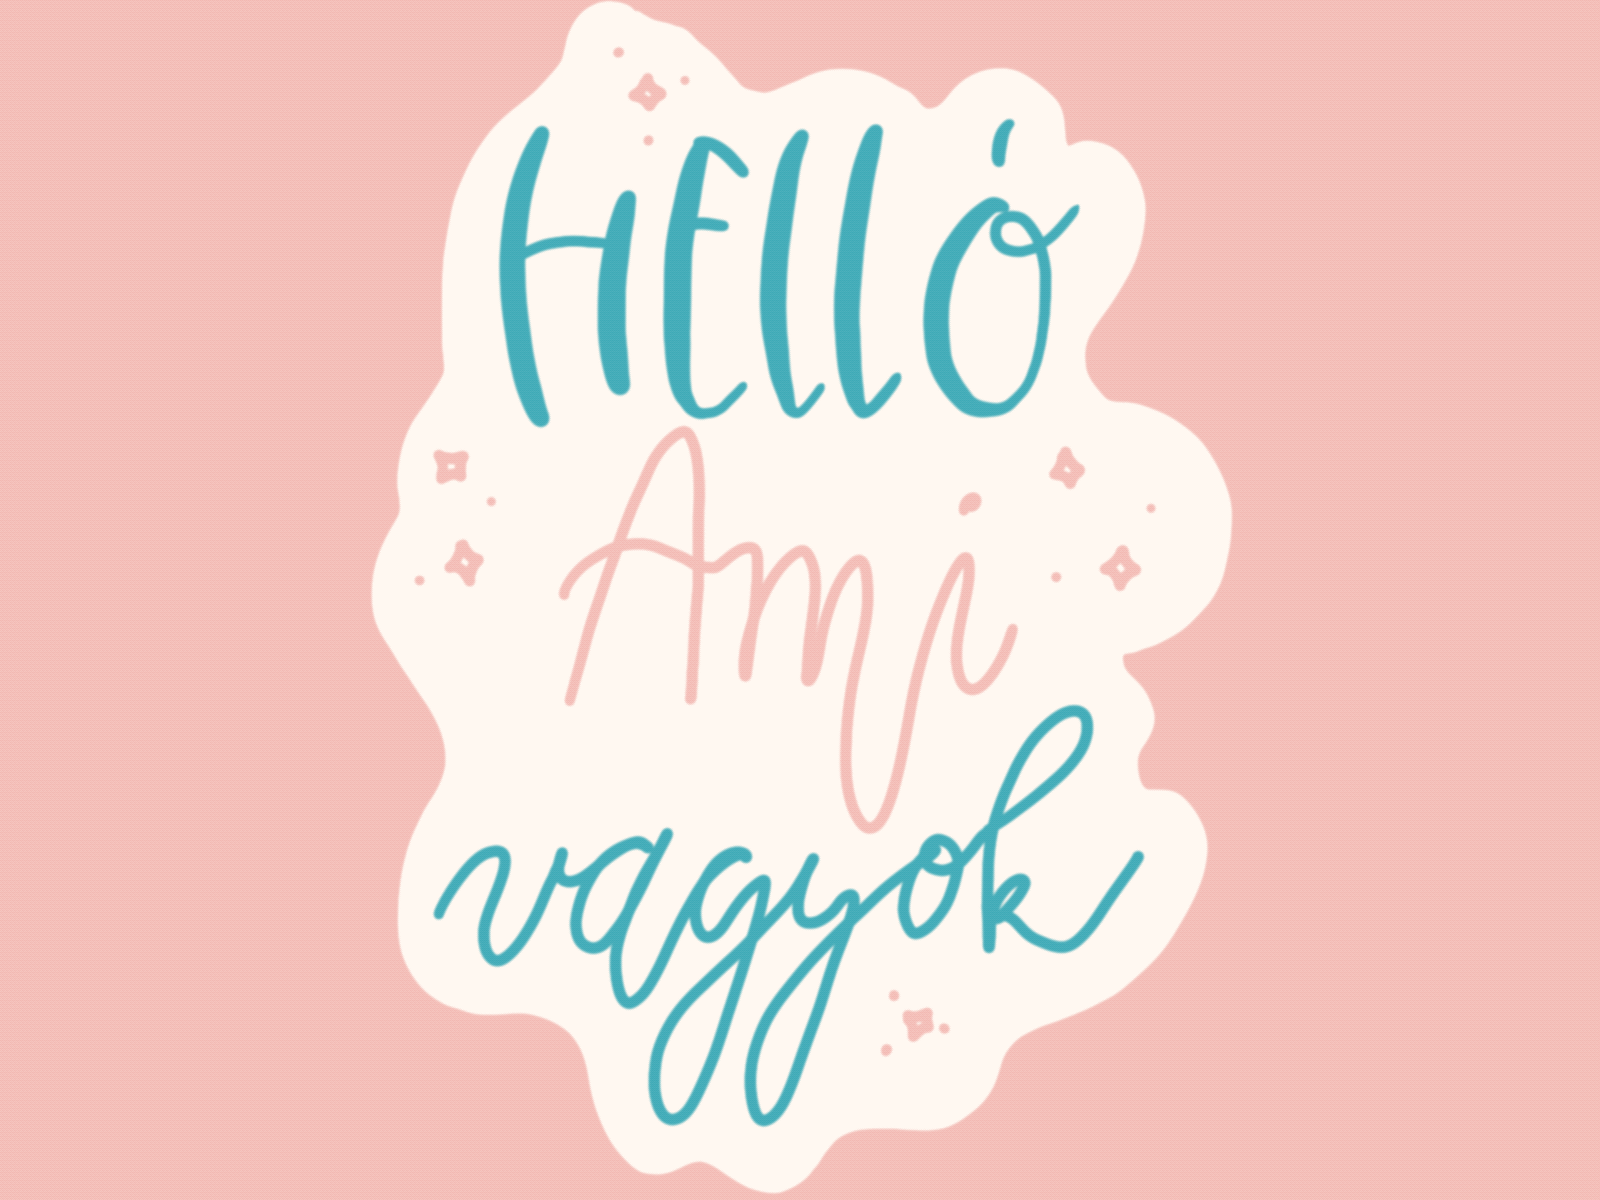 Hello Ami vagyok - Hello I am Ami Gif animated animated gif branding design gif hungarian illustration